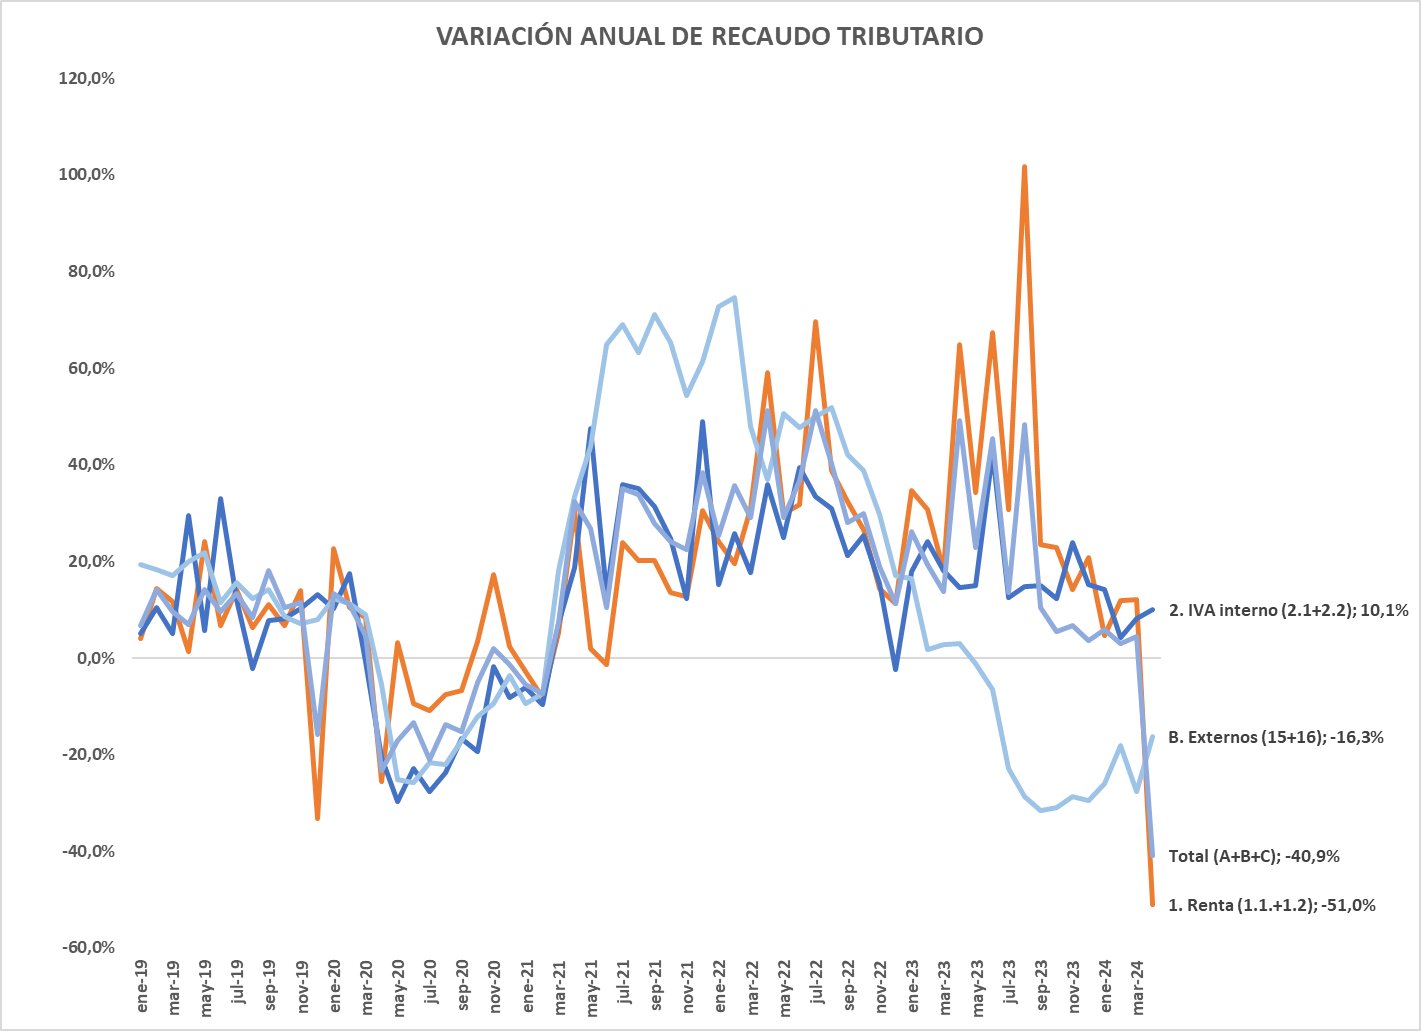 Impacto de la desaceleración económica en el recaudo tributario en Colombia